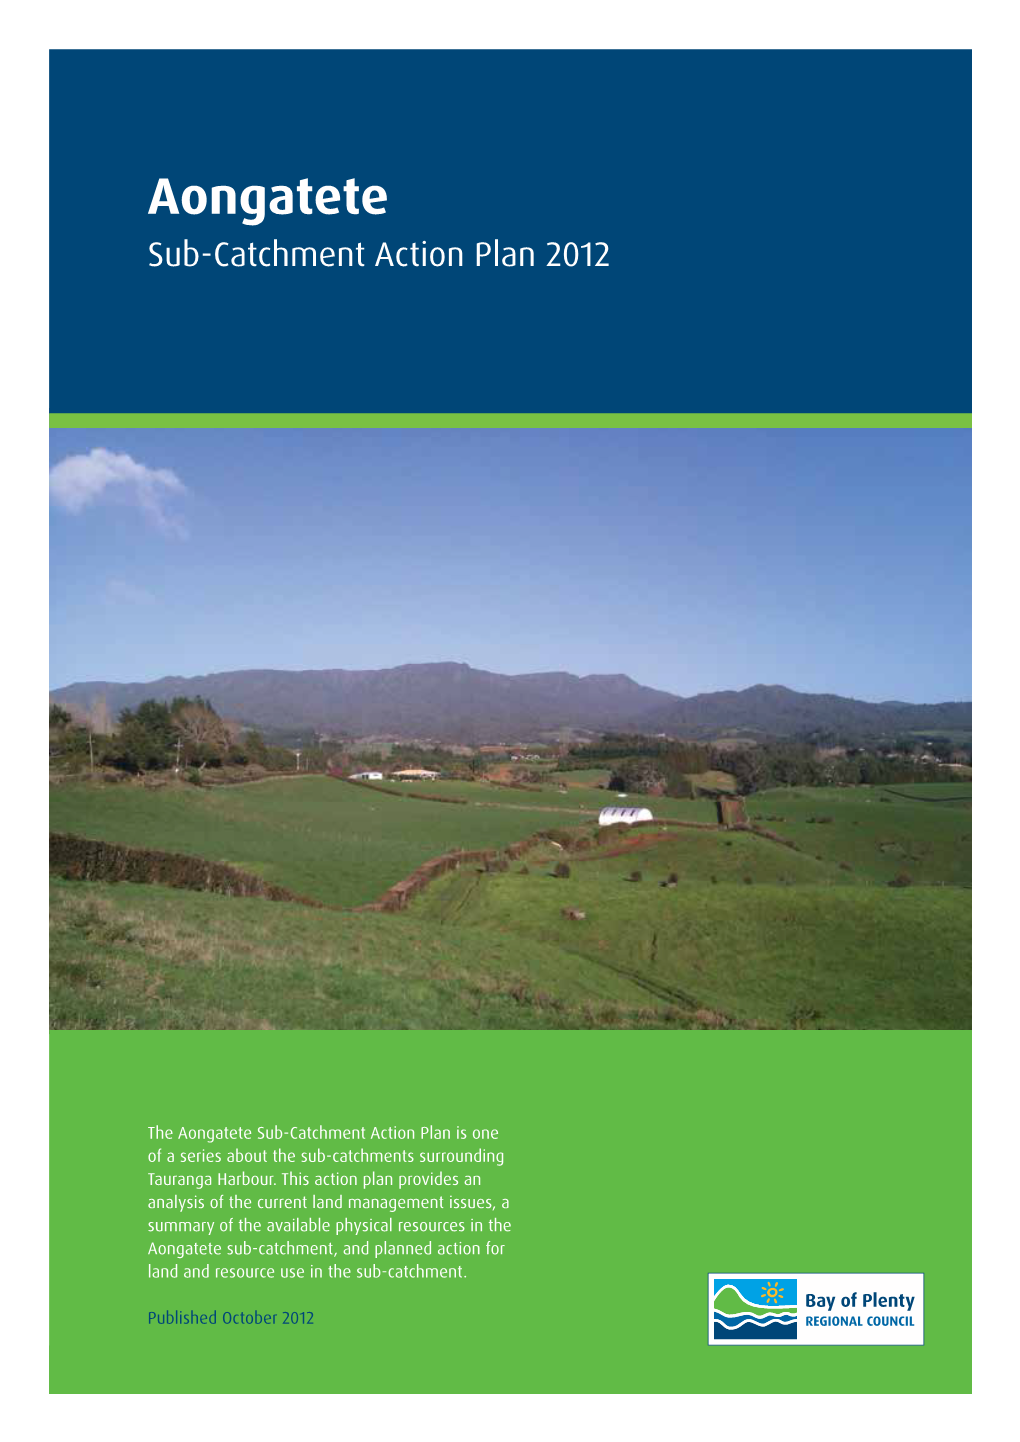 Aongatete Sub-Catchment Action Plan 2012